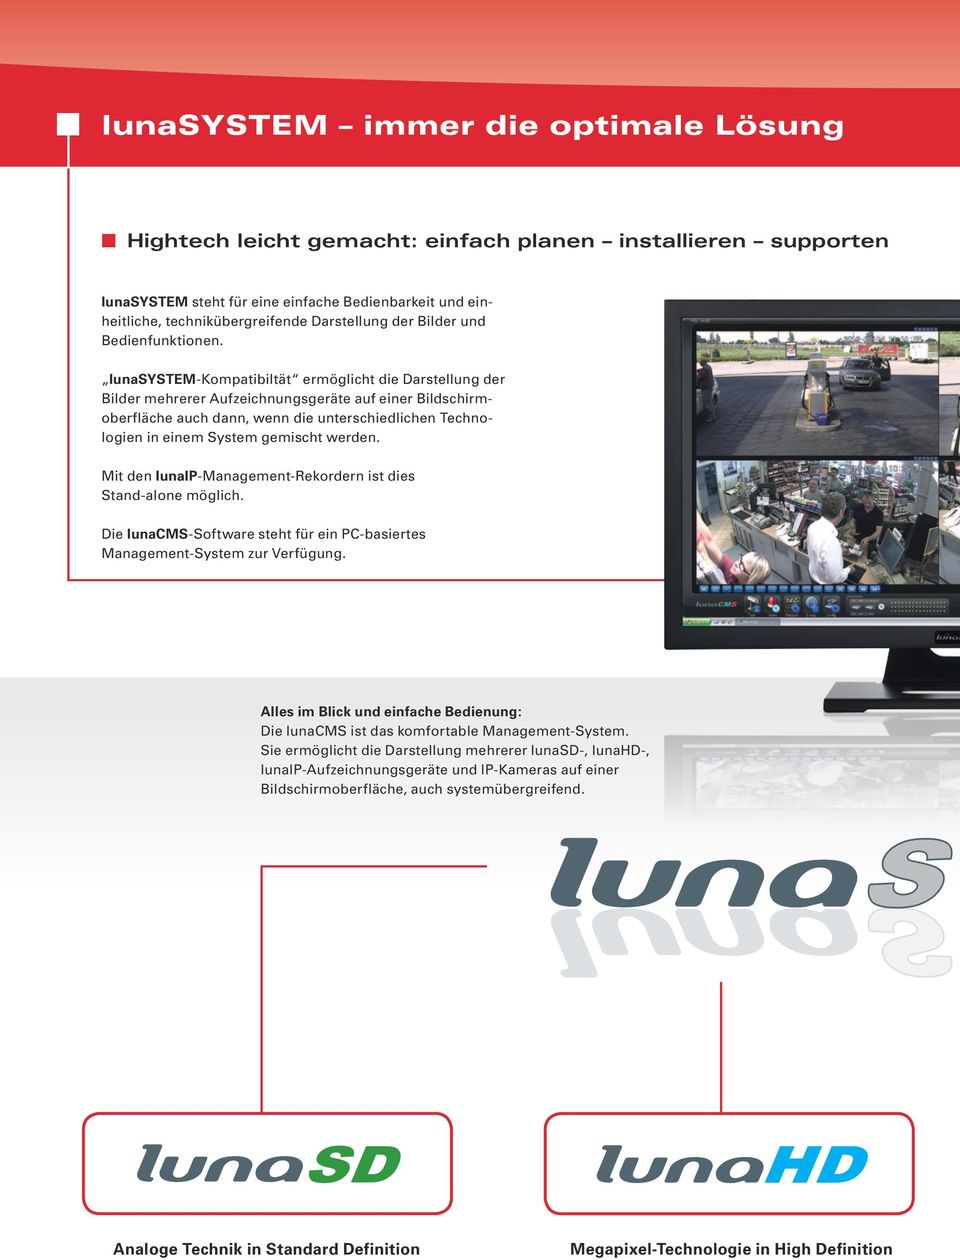 lunasystem-kompatibiltät ermöglicht die Darstellung der Bilder mehrerer Aufzeichnungsgeräte auf einer Bildschirmoberfläche auch dann, wenn die unterschiedlichen Technologien in einem System gemischt